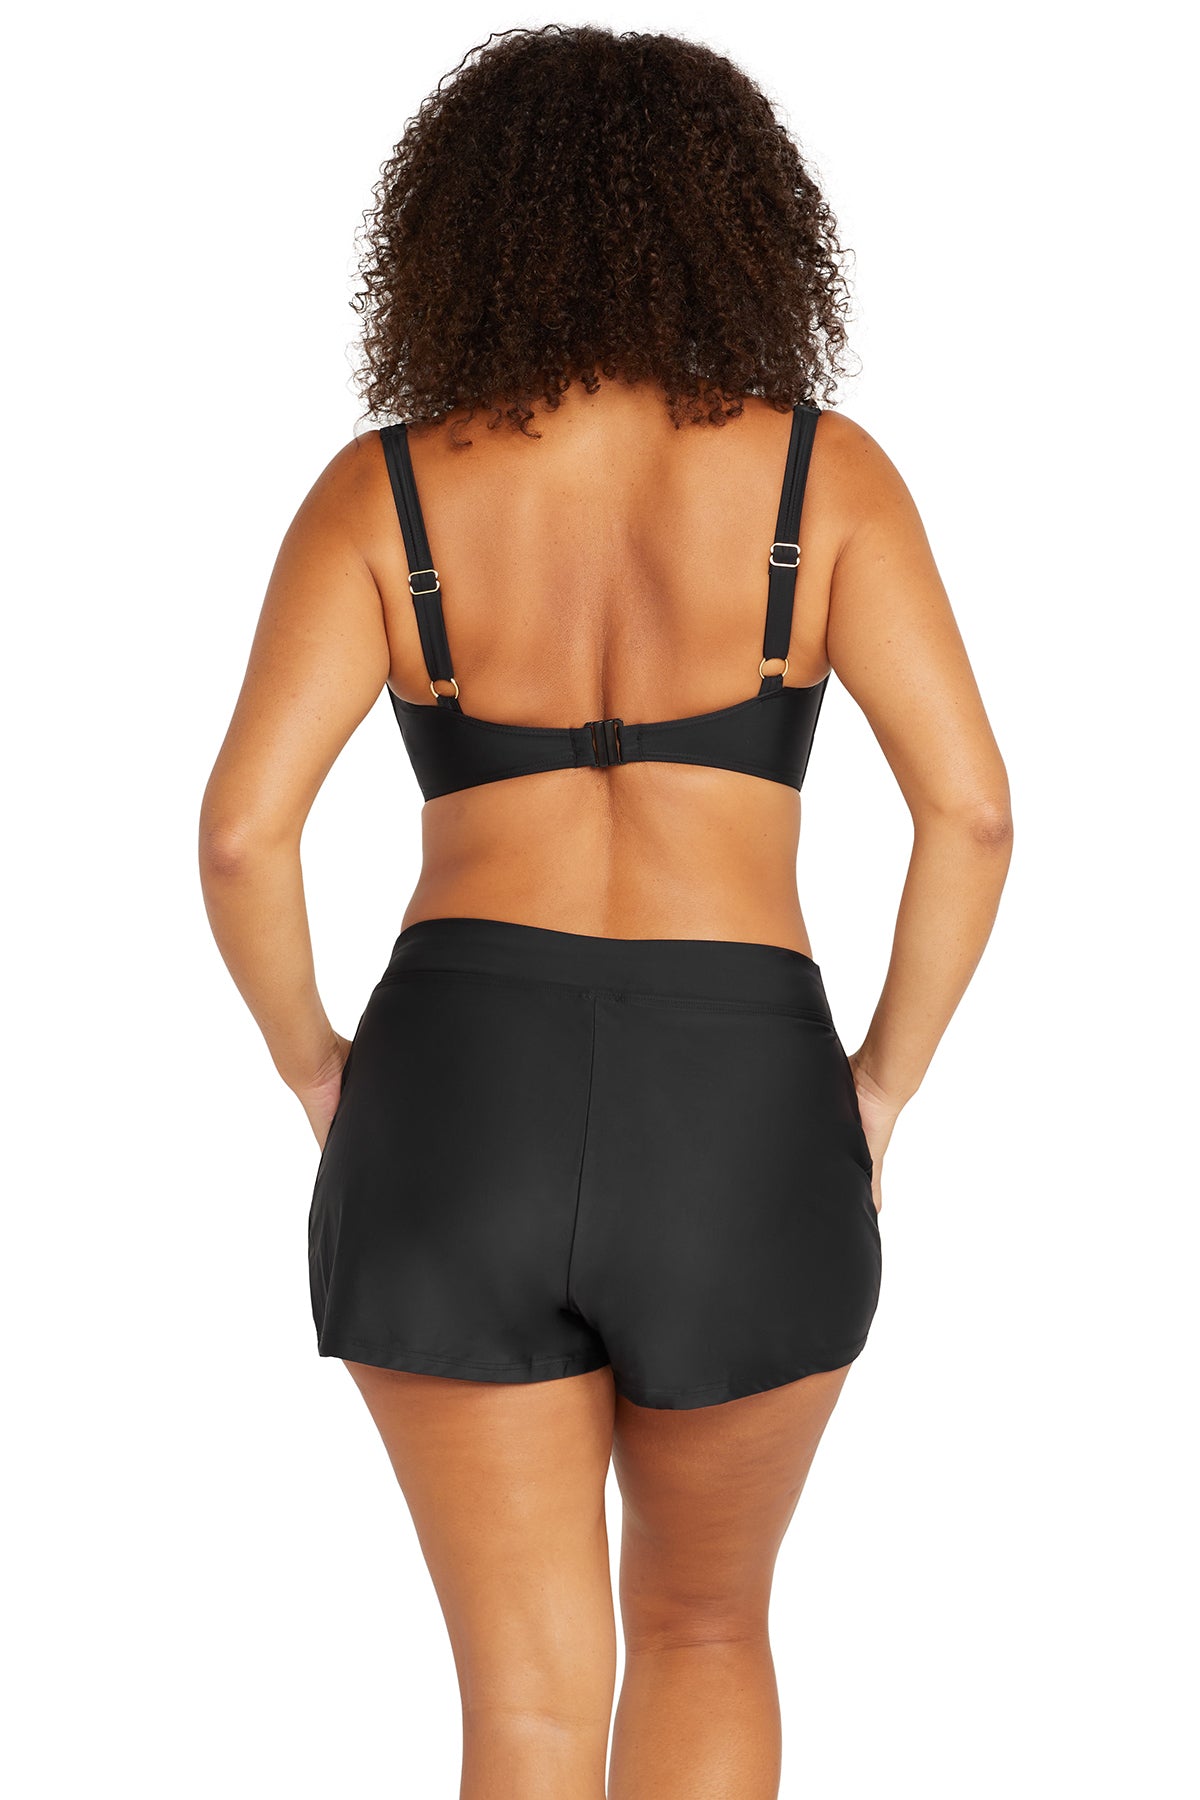 ARTESANDS Zig Zag Black Delacroix Bikini Top – Seychelles Swimwear